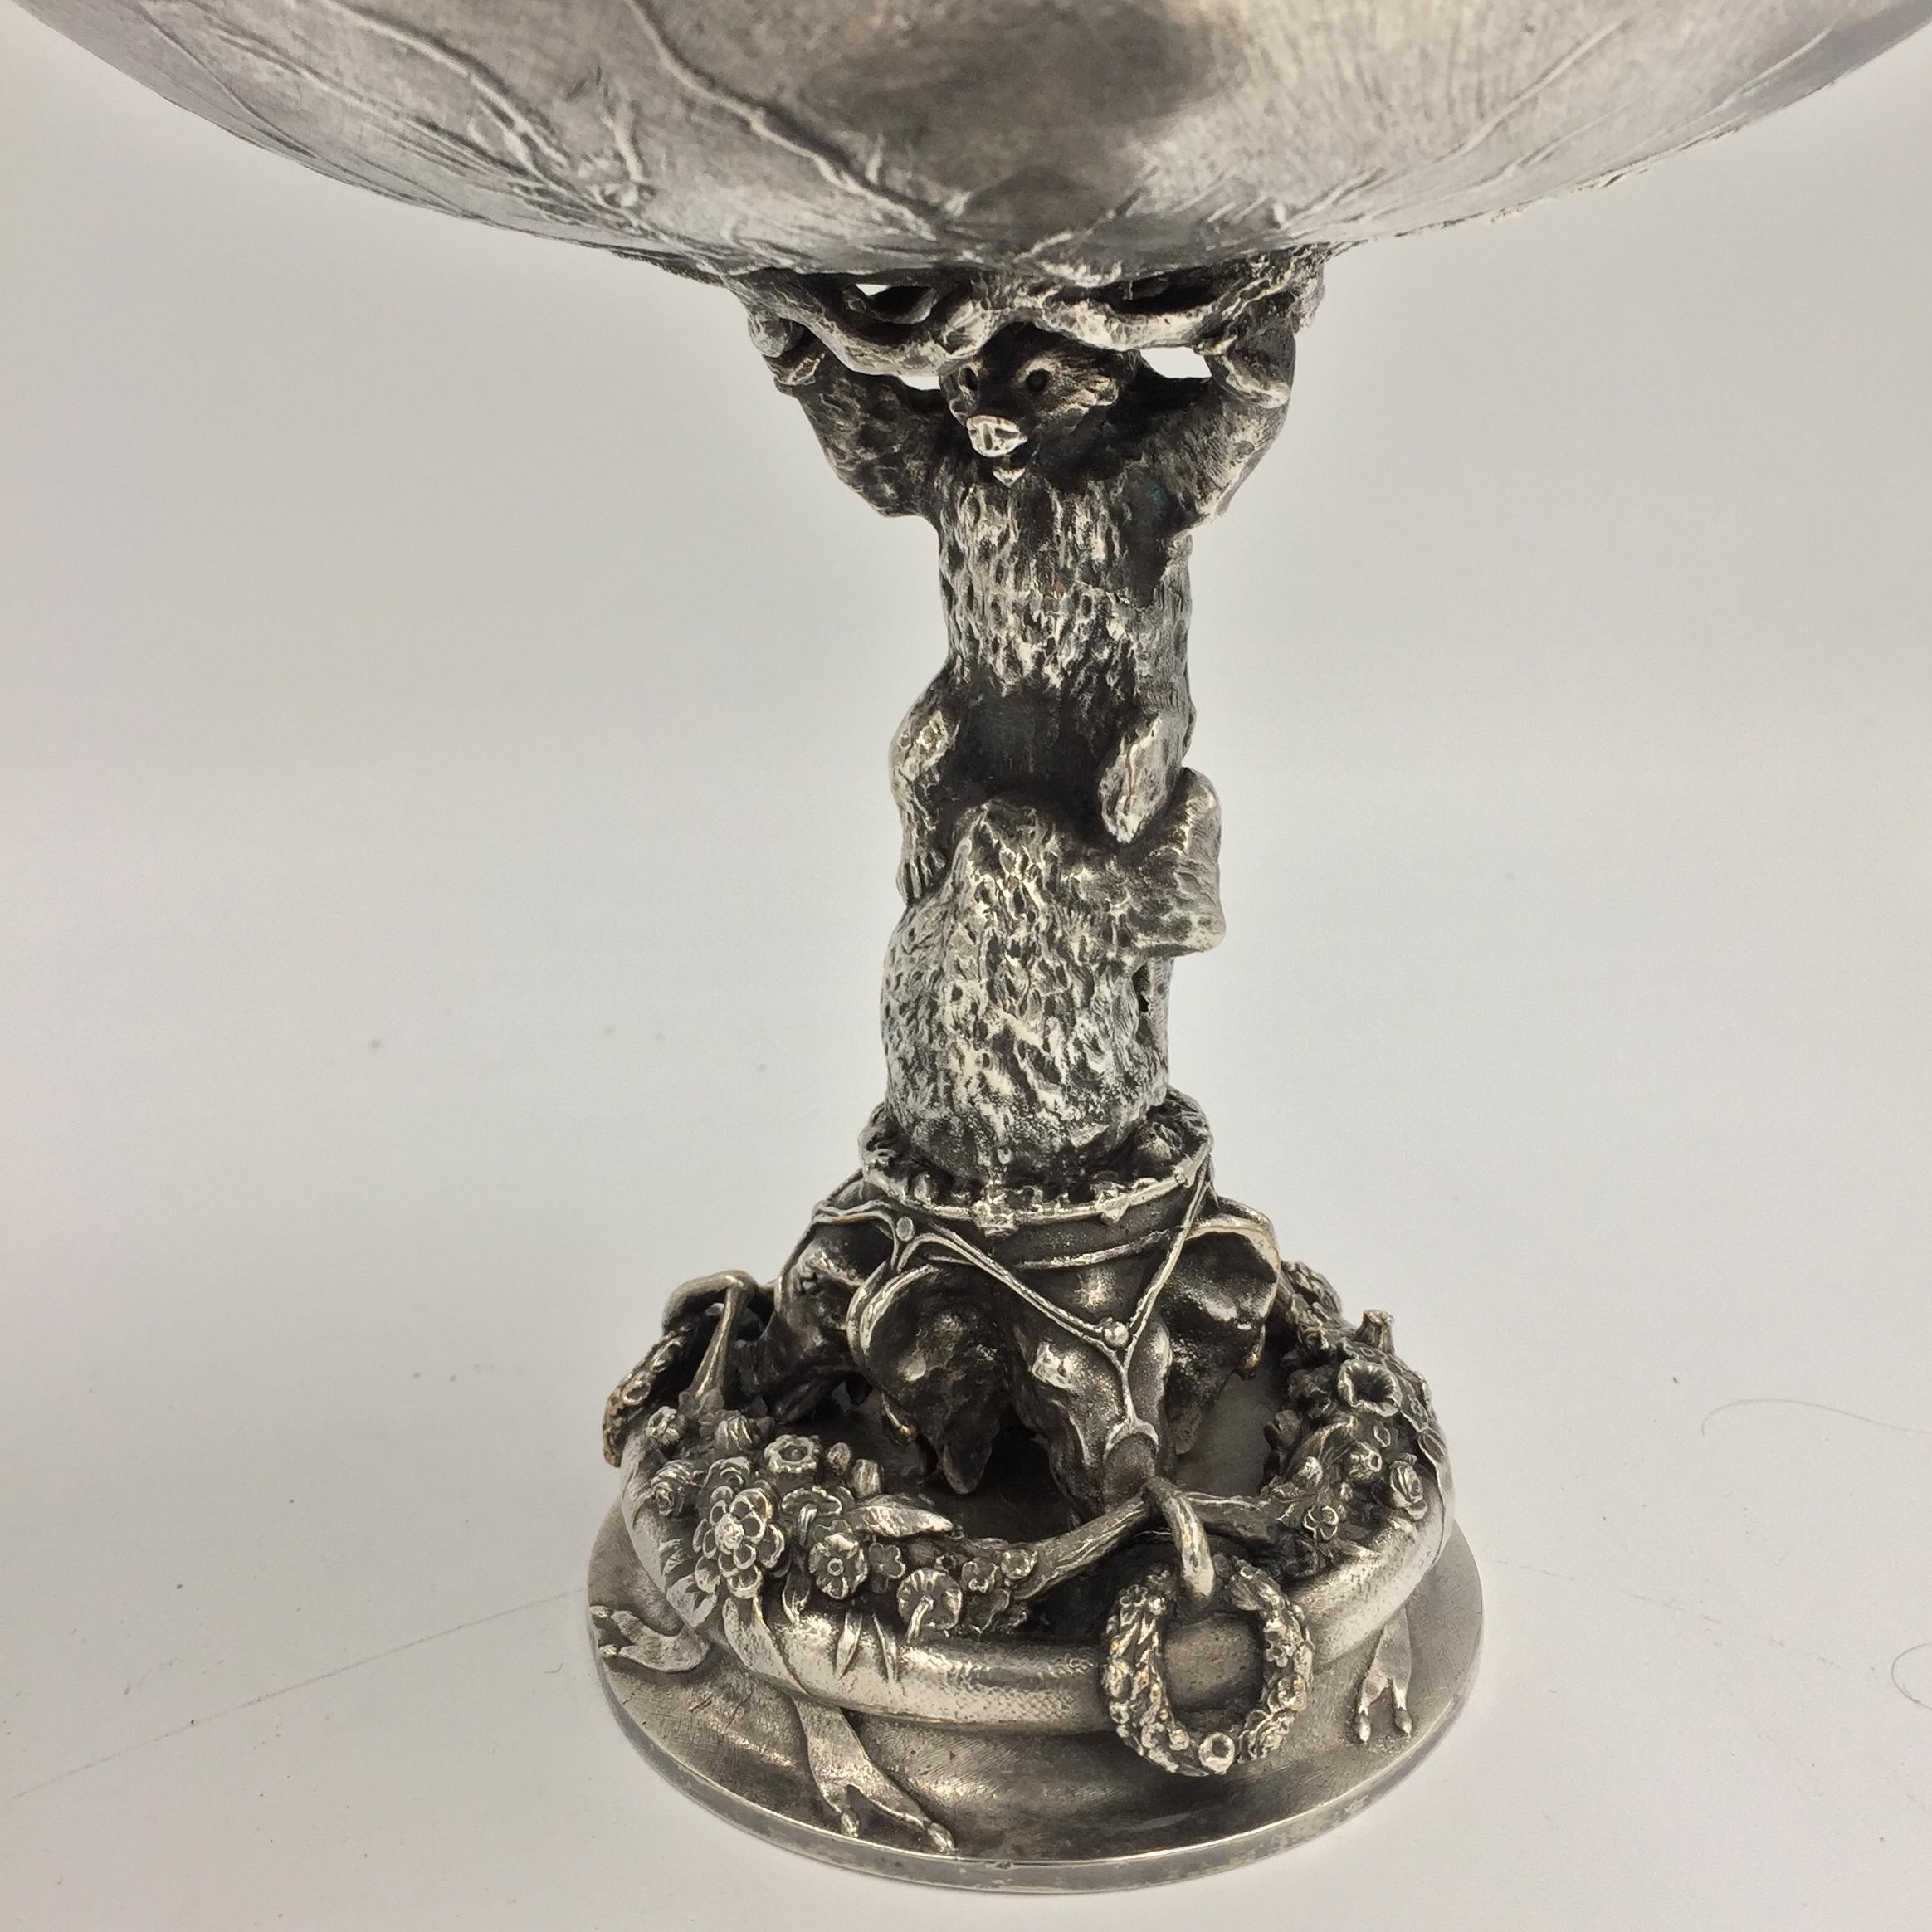 Cette tasse à ours Fratin est signée de l'éditeur Daubrée, 19ème siècle, bronze argenté.
la coupe est montée sur pied et est composée à la base de têtes d'éléphants et au-dessus d'un aigle. L'argenture date du 20e siècle.

Christophe Fratin